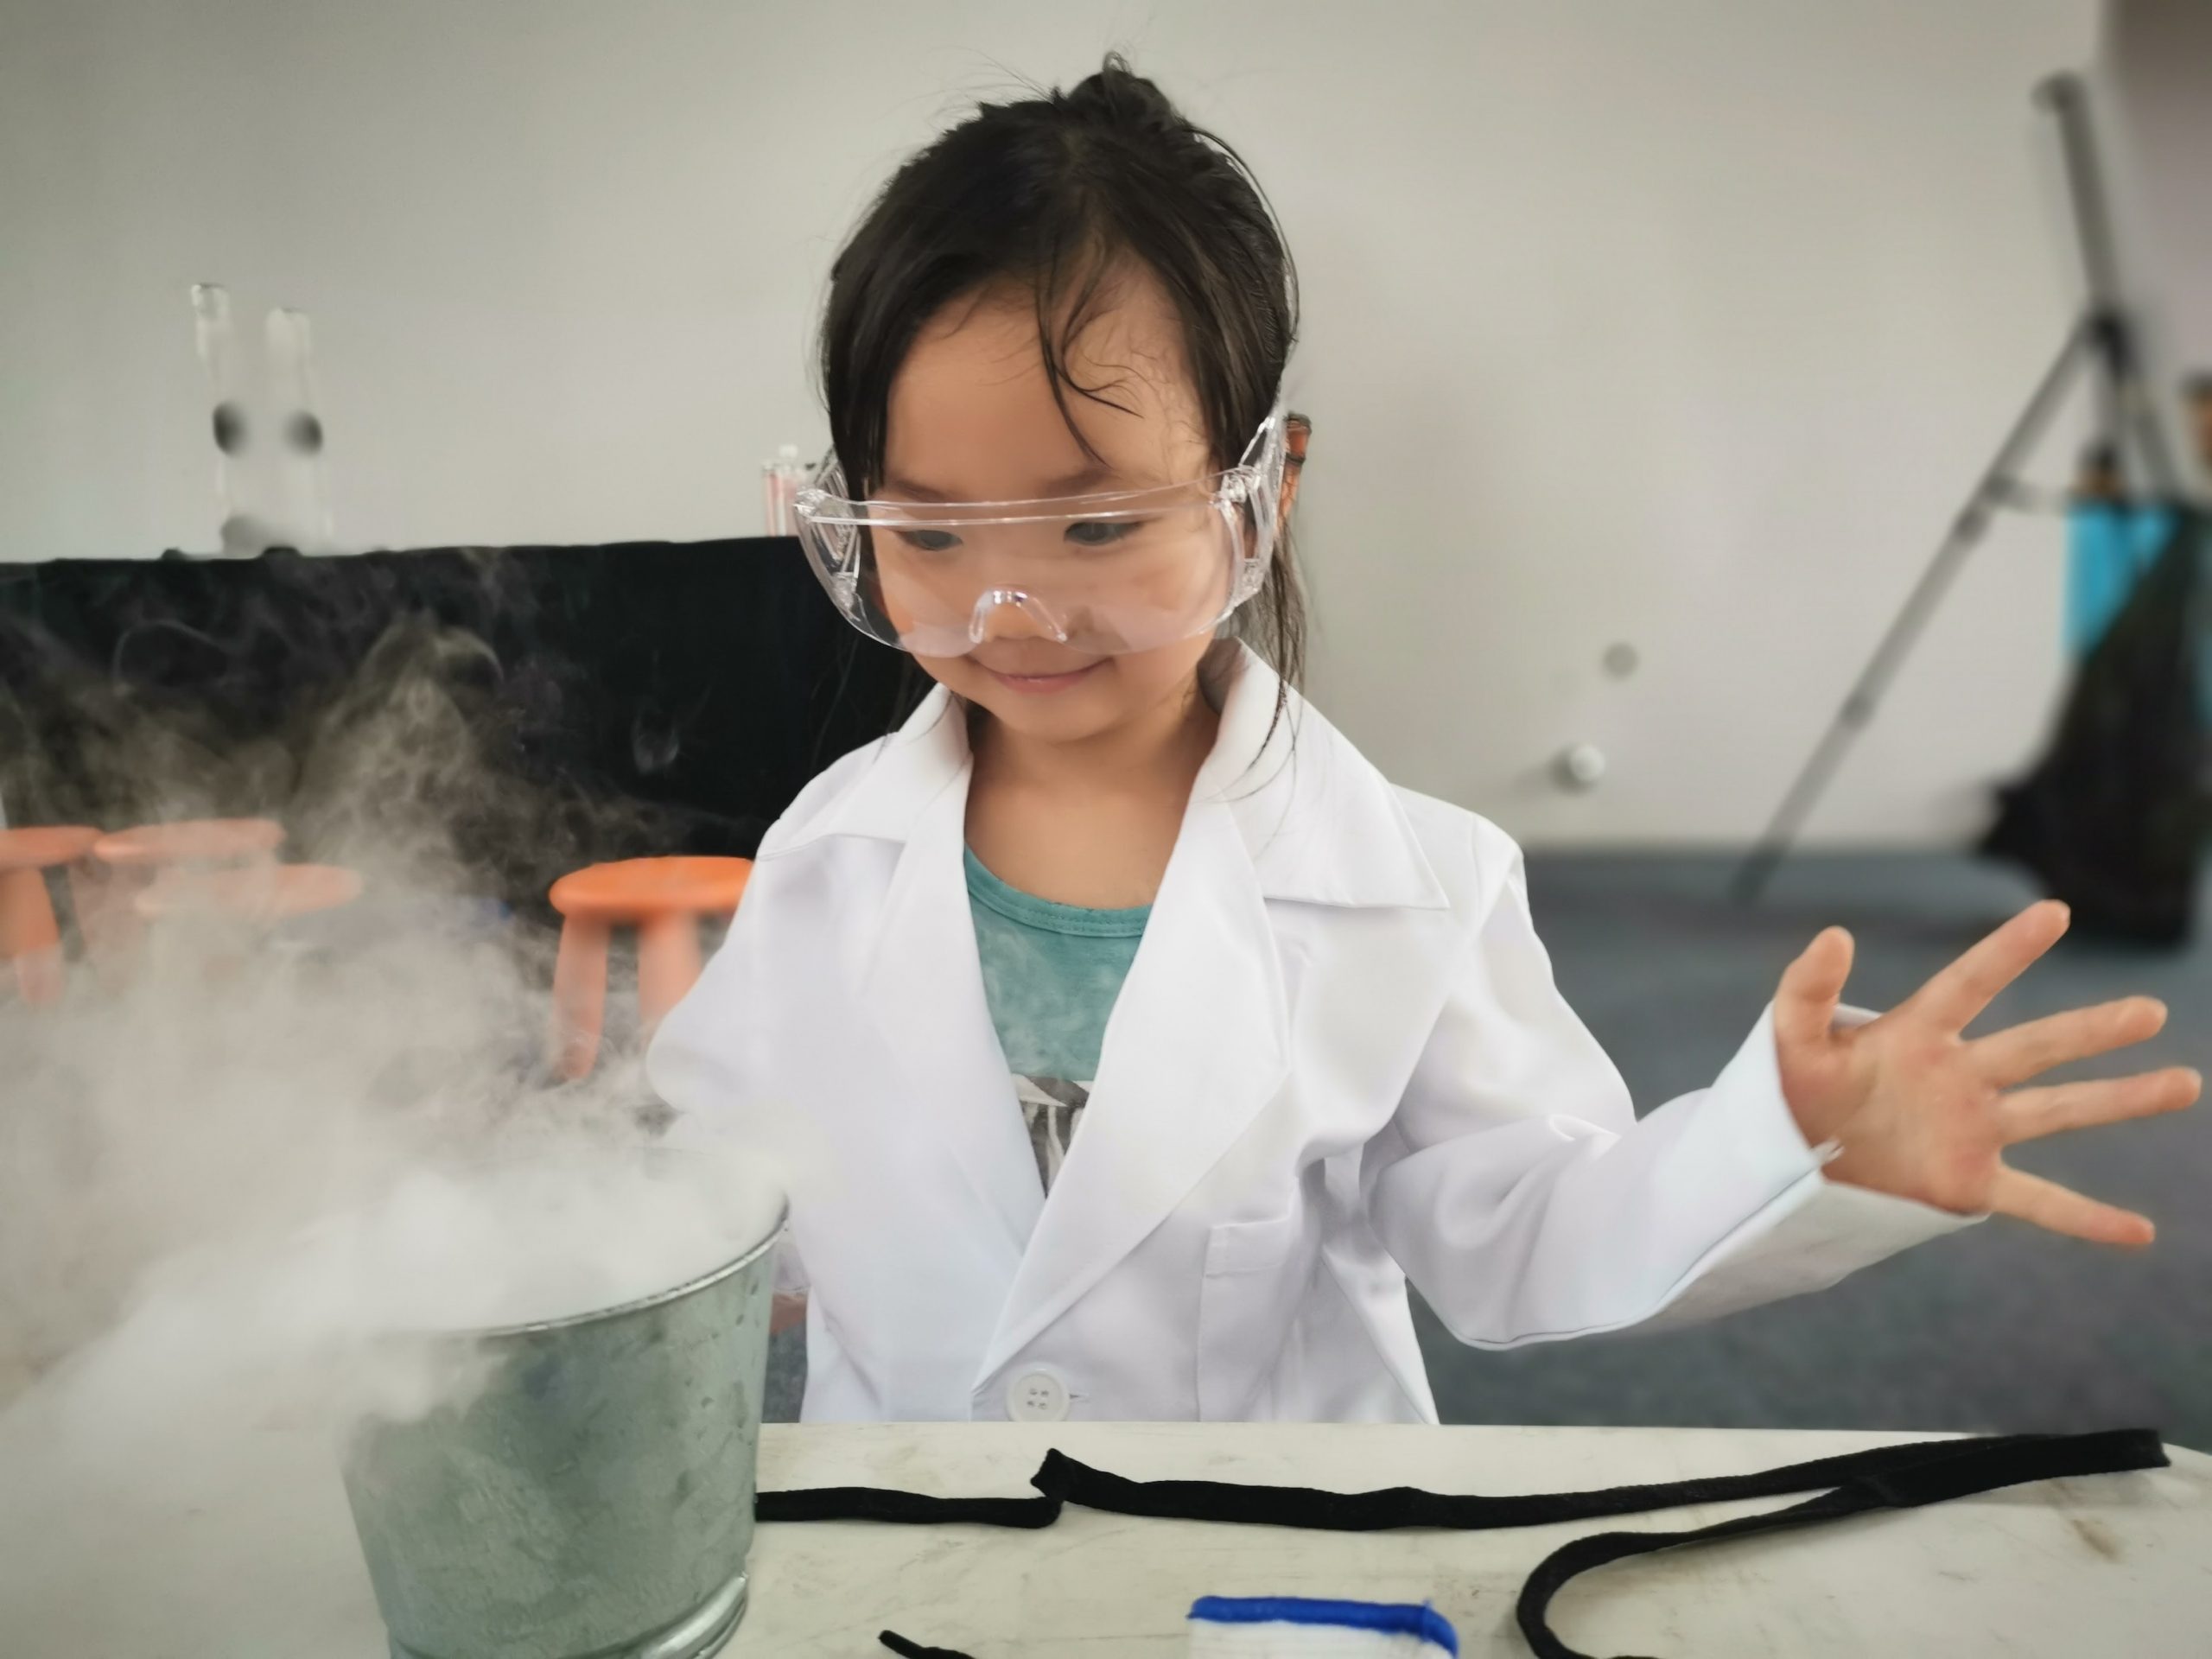 Perchè far apassionare le bambine alle scienze